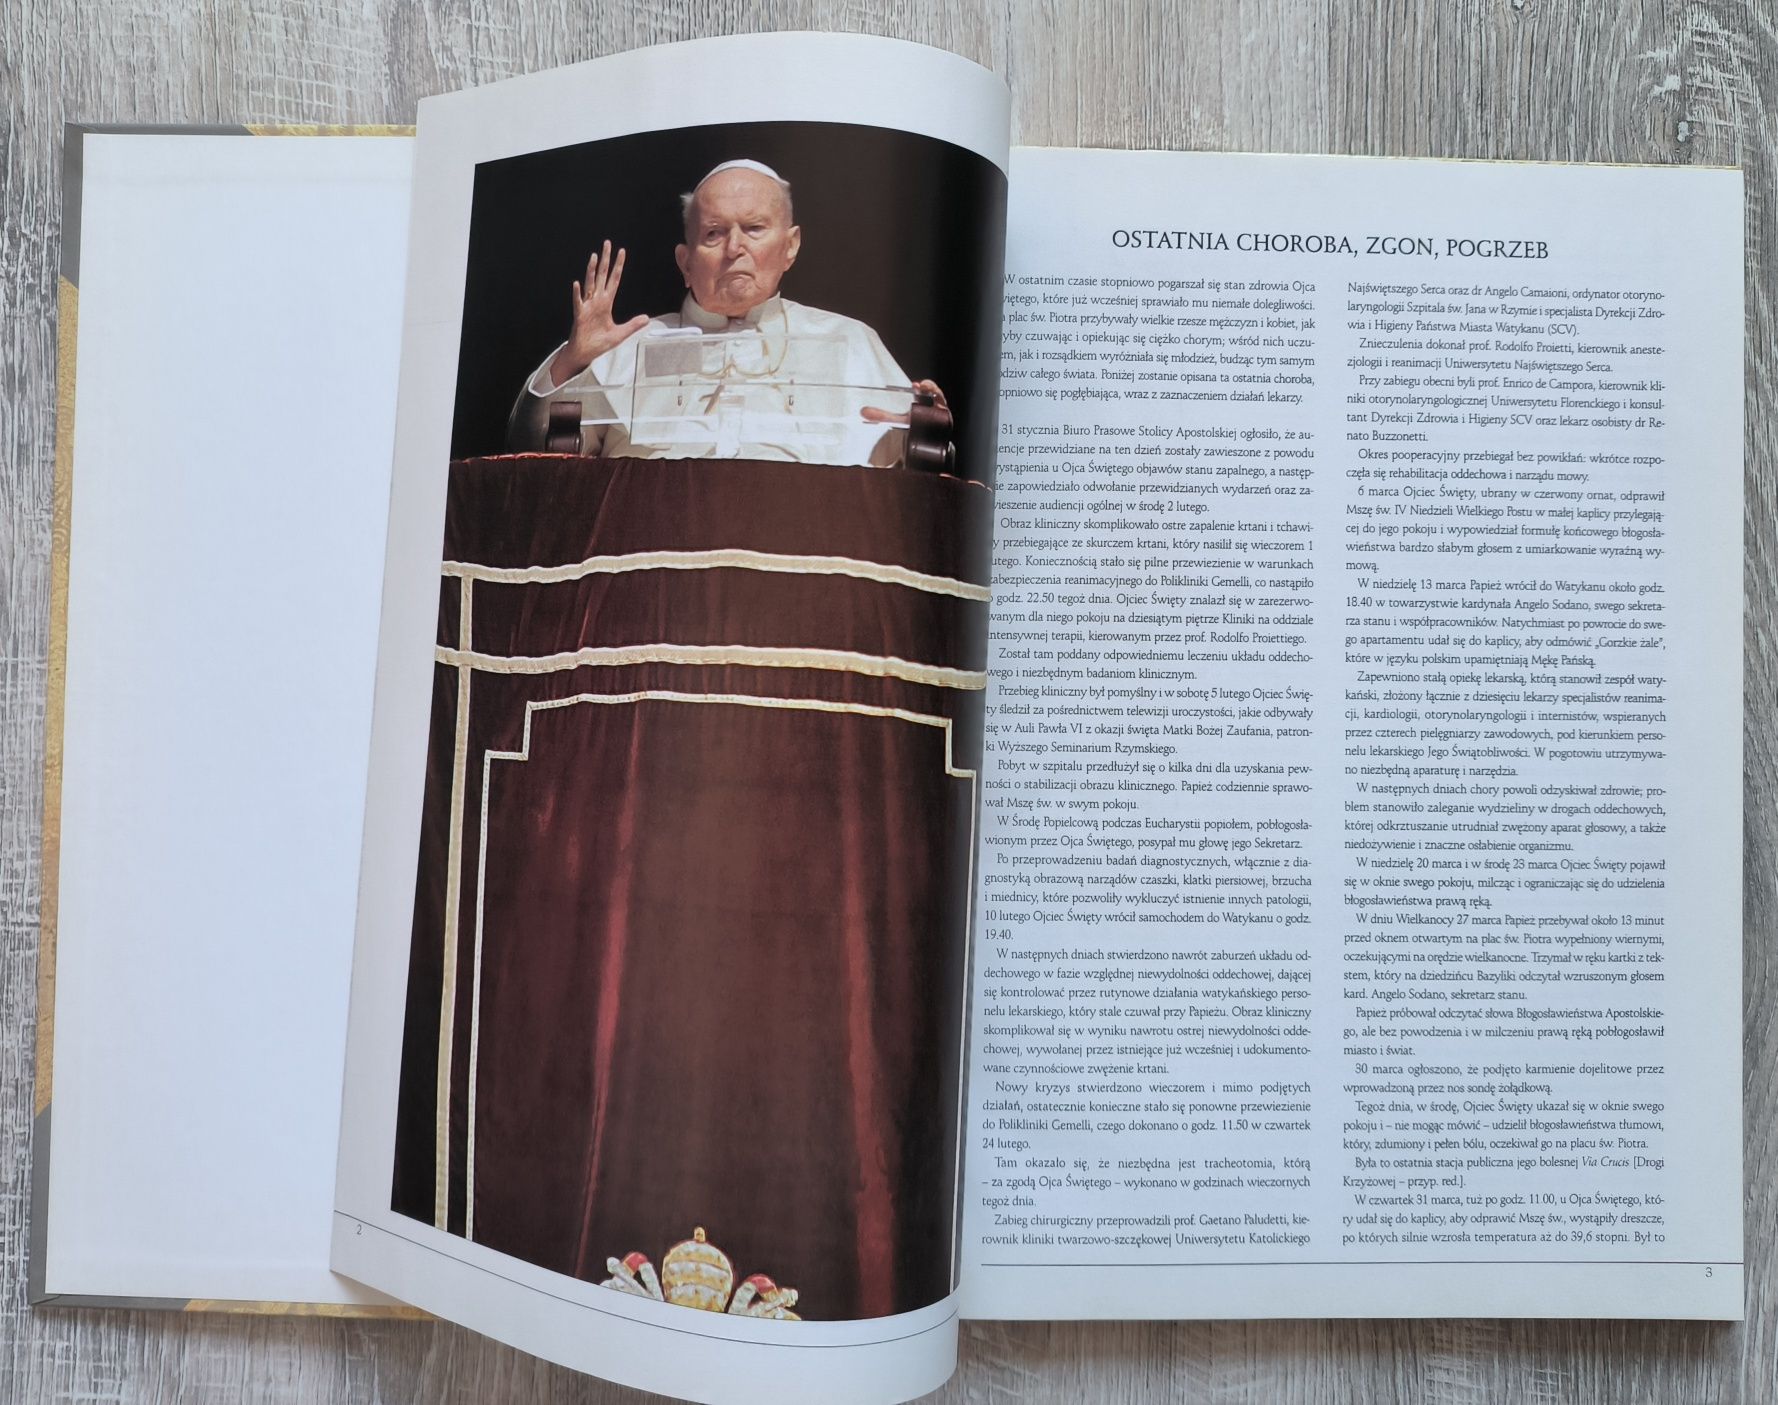 Ostatnia choroba ,zgon i pogrzeb Jana Pawła II